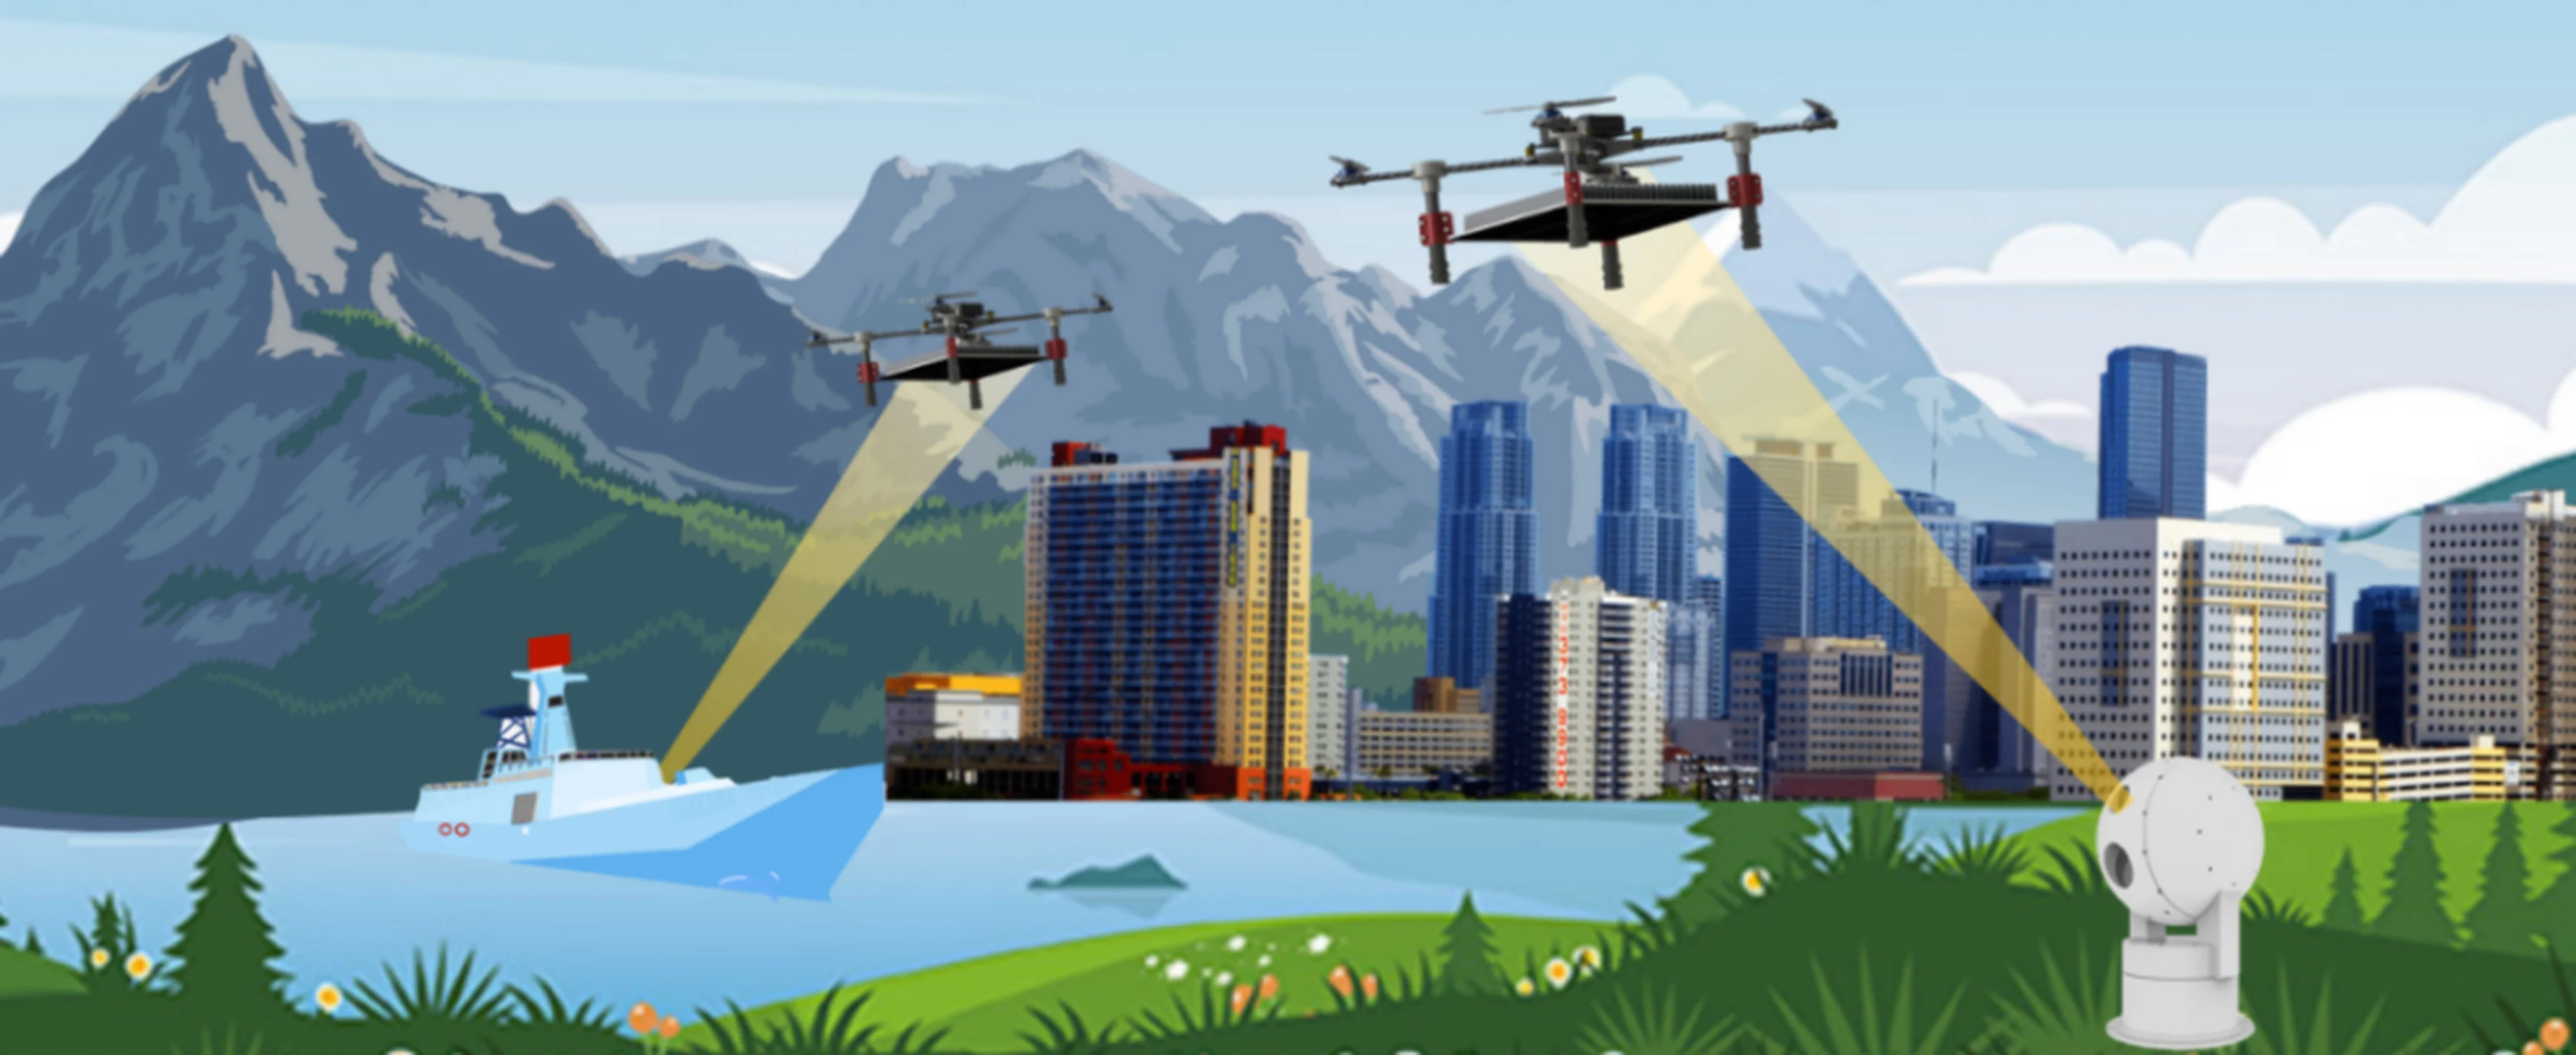 Drohnen können ewig fliegen - Chinesische Wissenschaftler testen lasergesteuerte Drohne